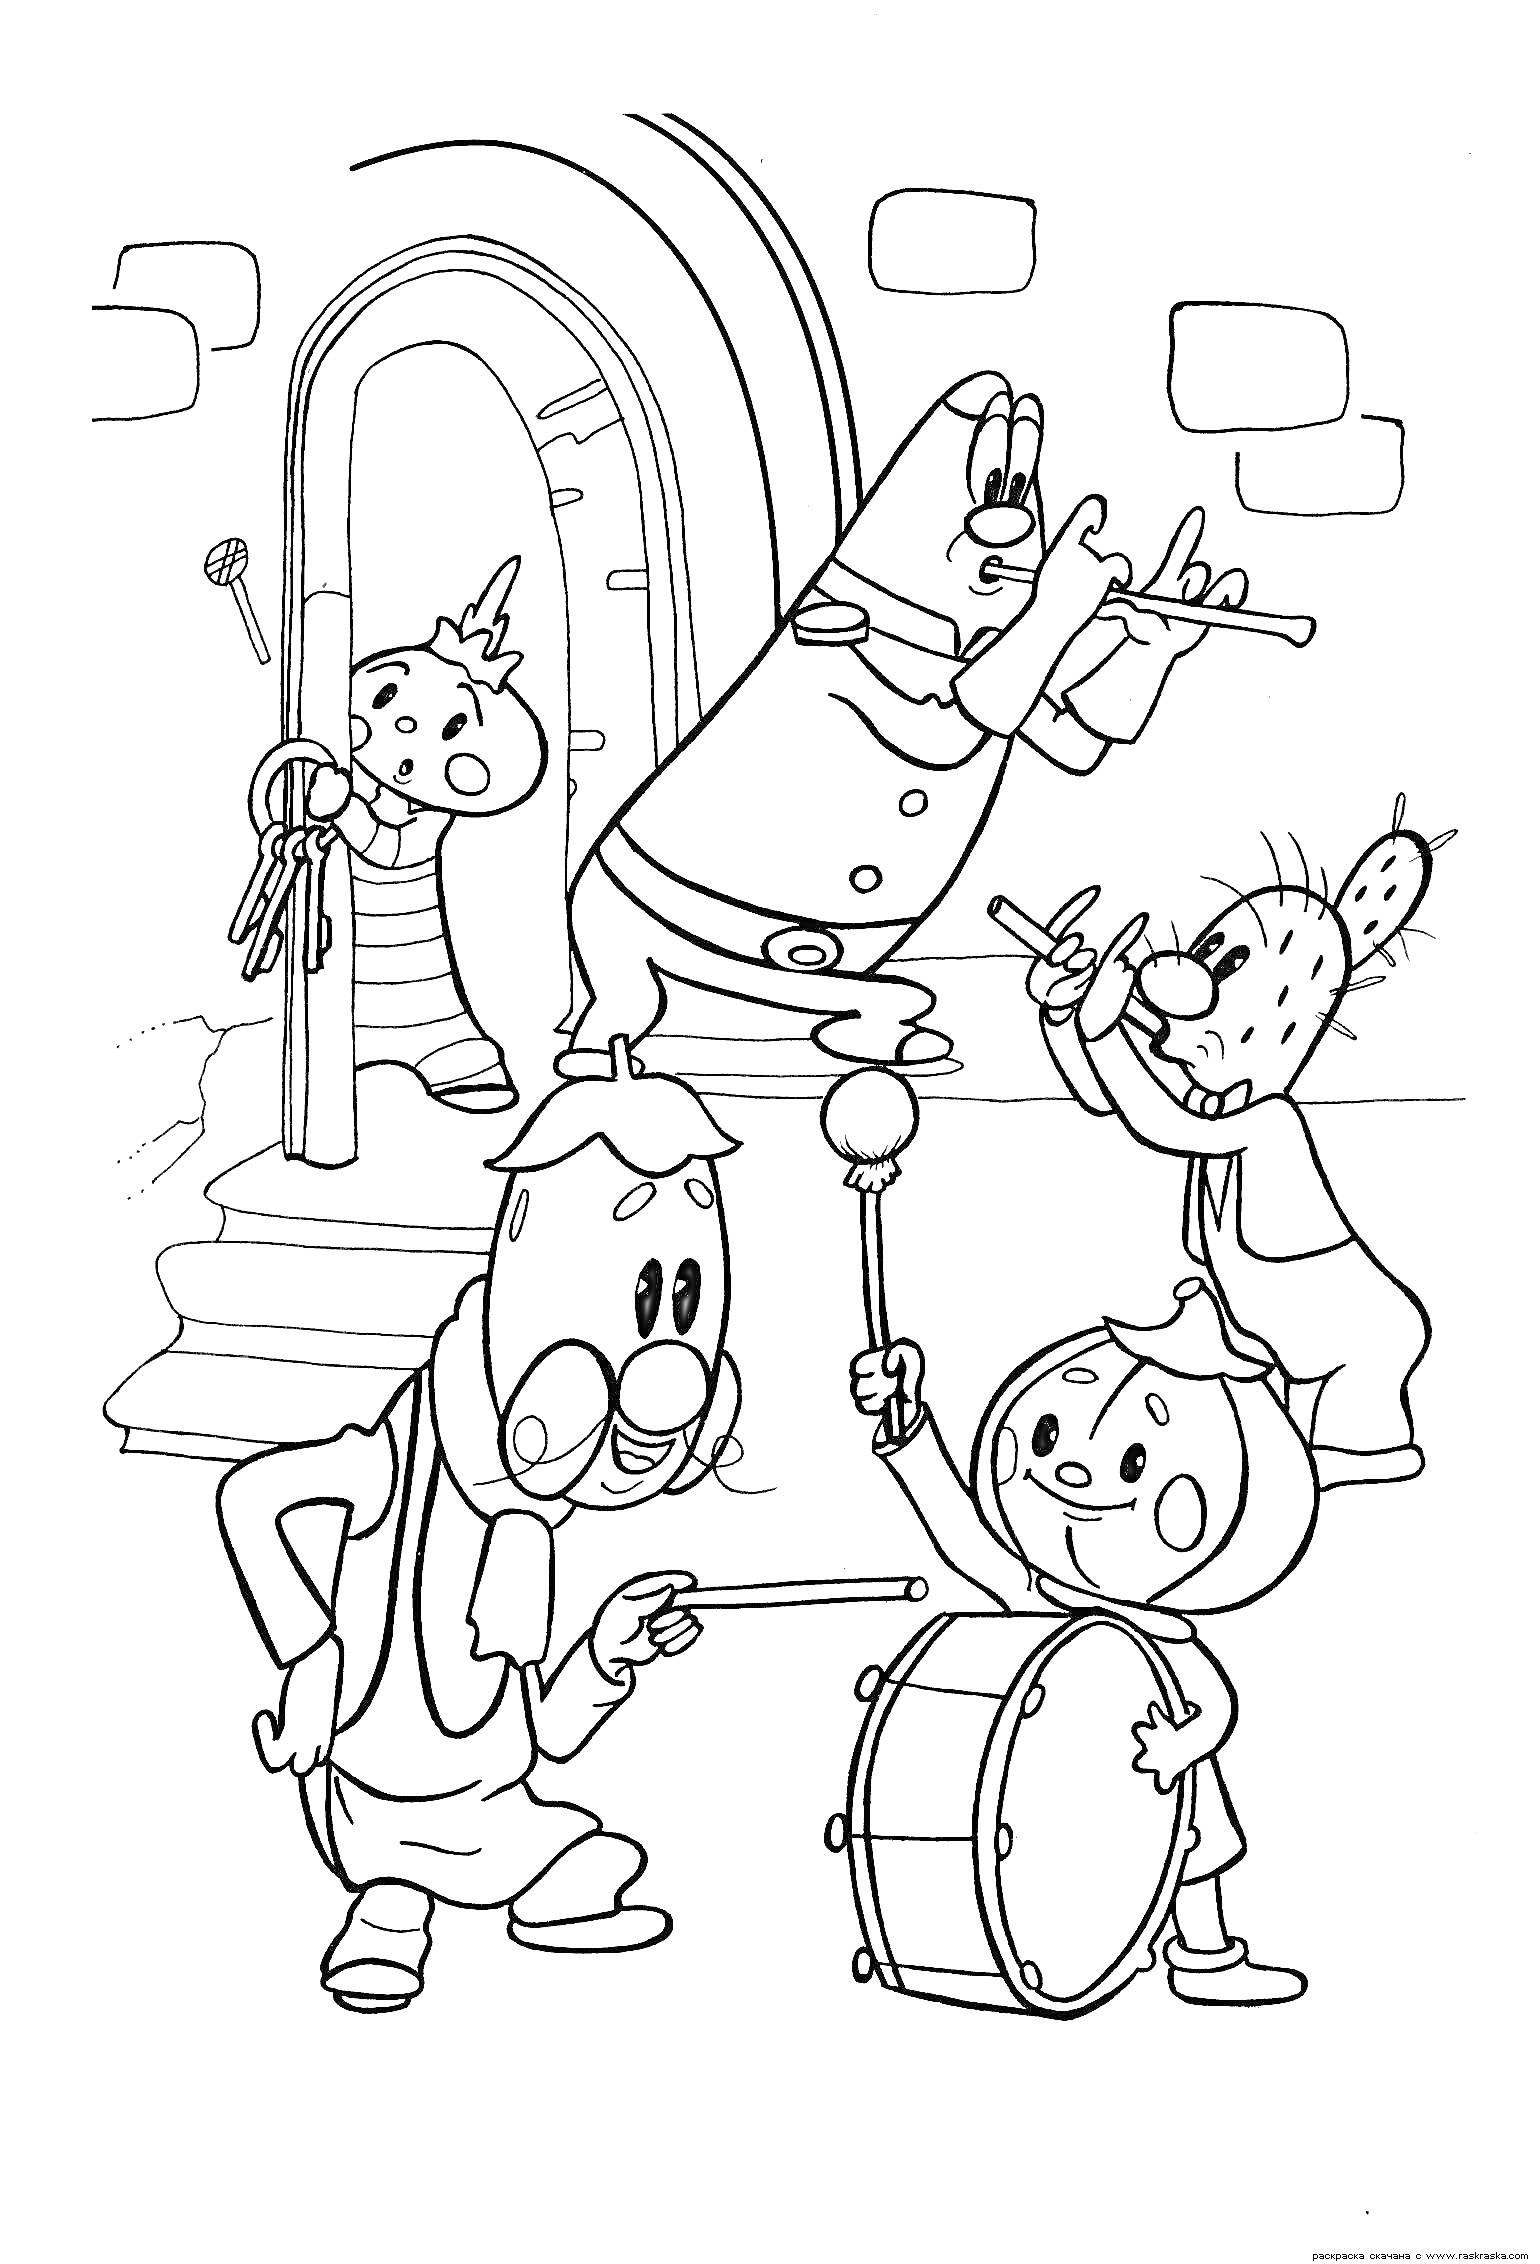 Чиполлино и друзья играют на музыкальных инструментах у арки с дверью